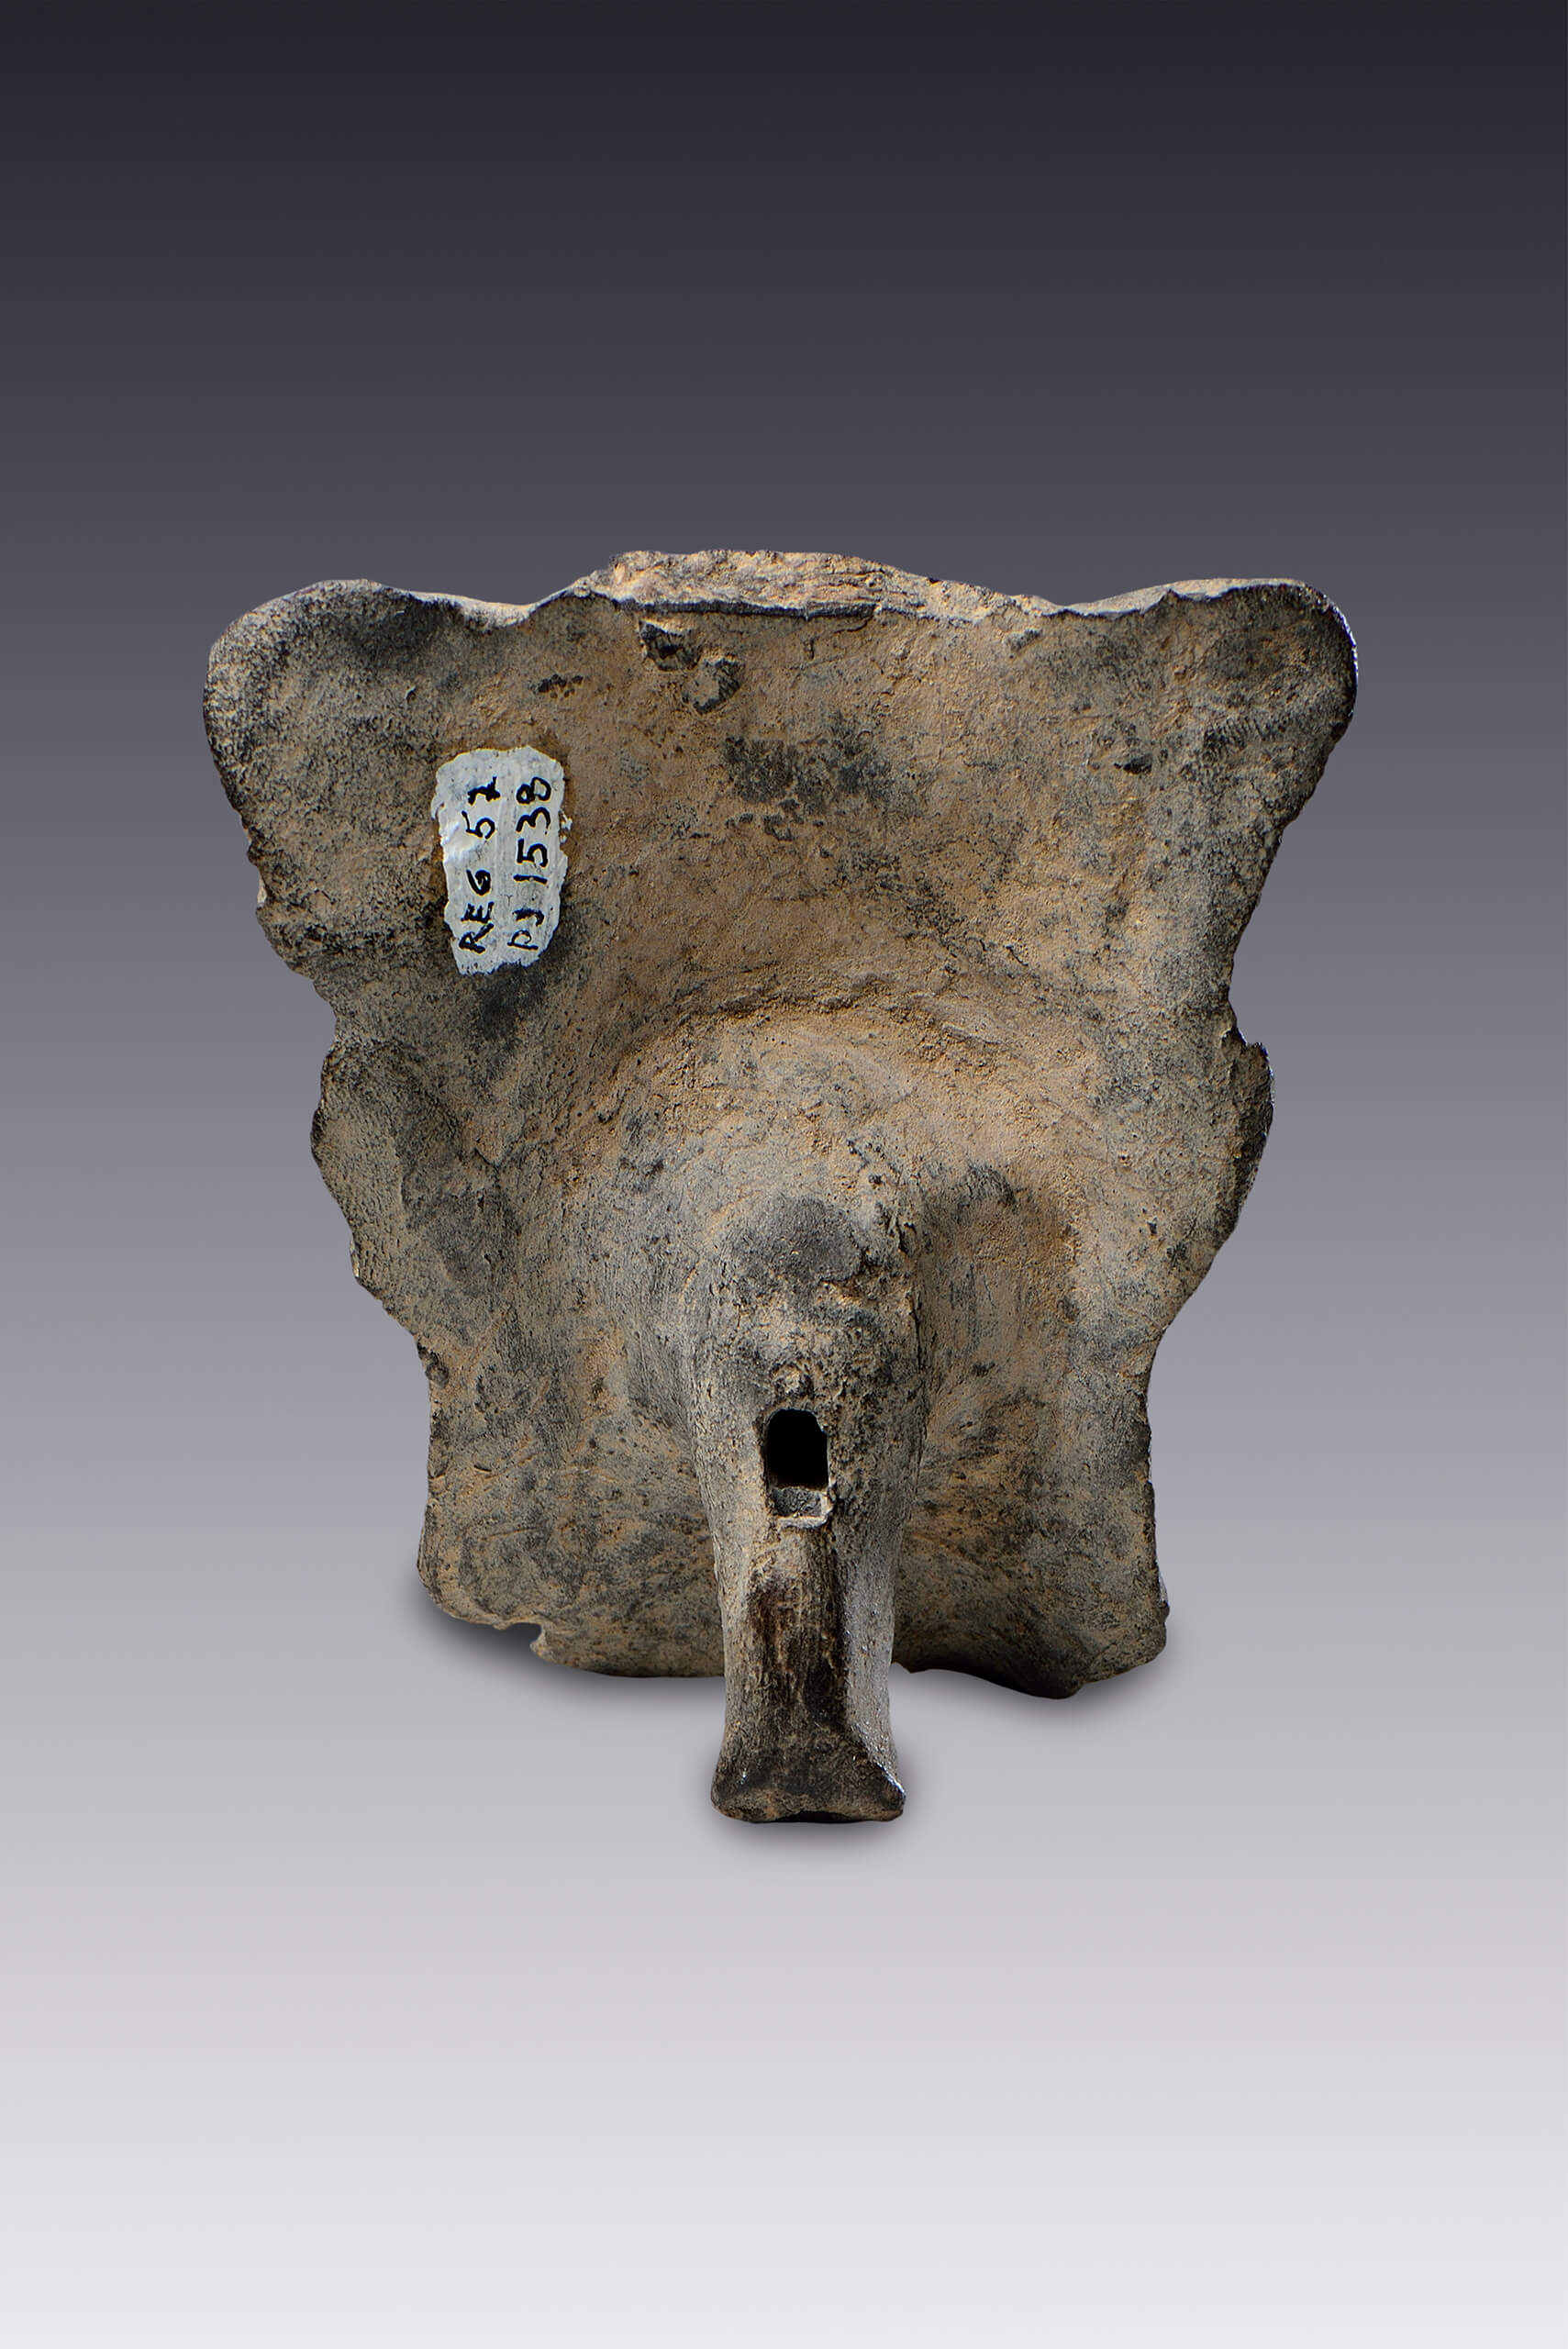 Silbato con la figura de un murciélago | El México antiguo. Salas de Arte Prehispánico | Museo Amparo, Puebla